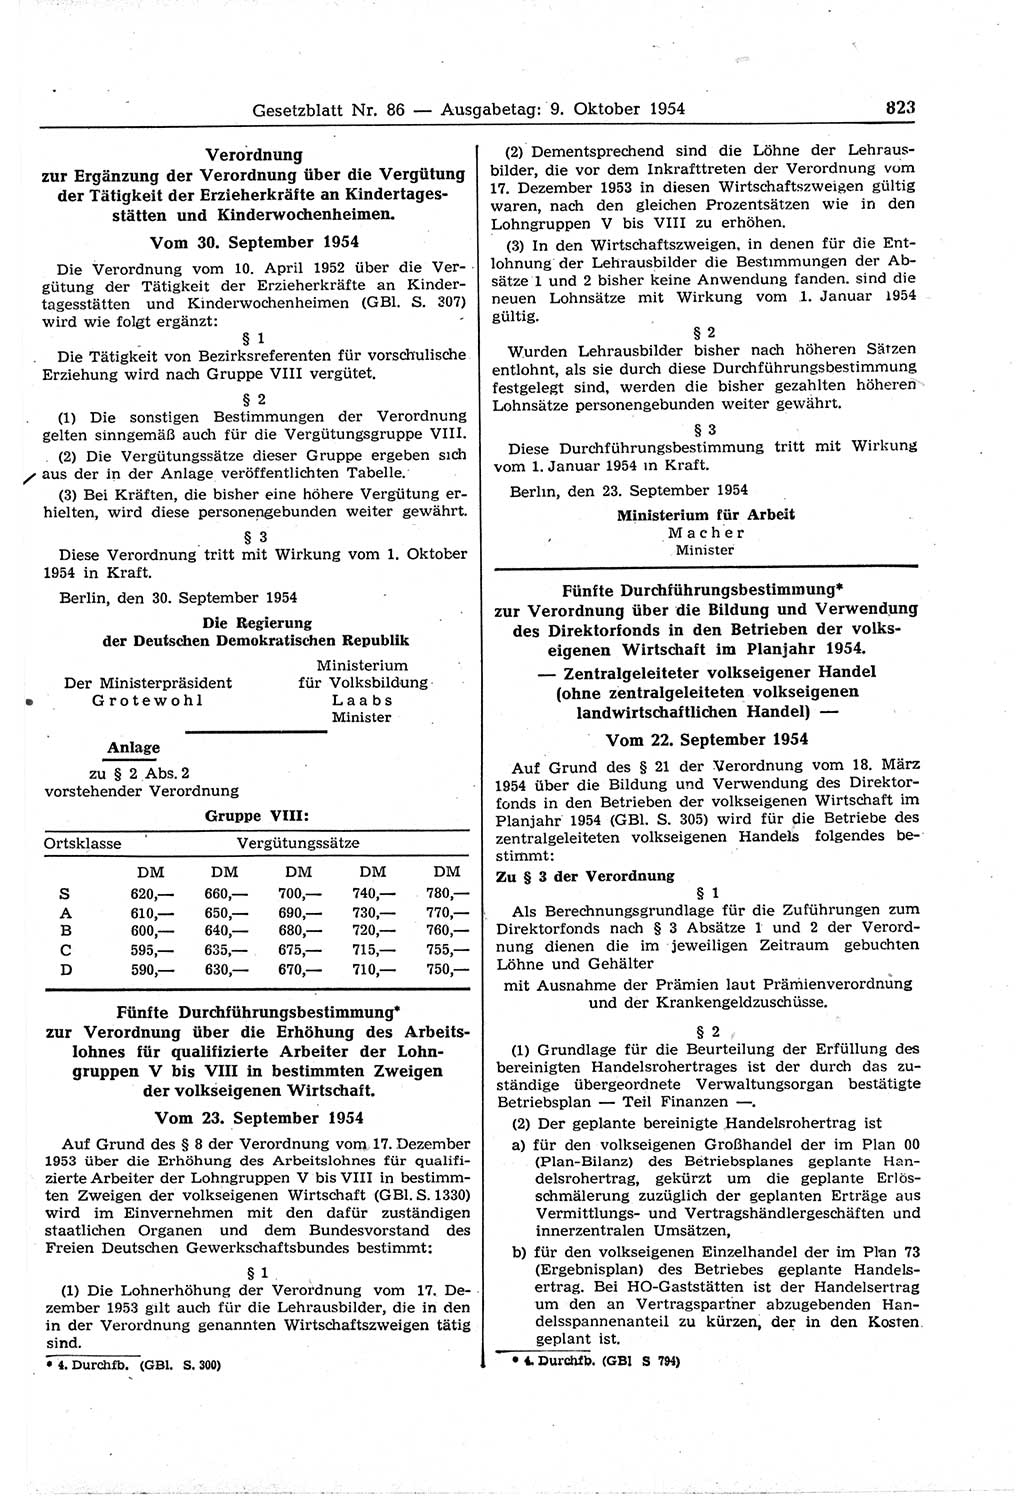 Gesetzblatt (GBl.) der Deutschen Demokratischen Republik (DDR) 1954, Seite 823 (GBl. DDR 1954, S. 823)